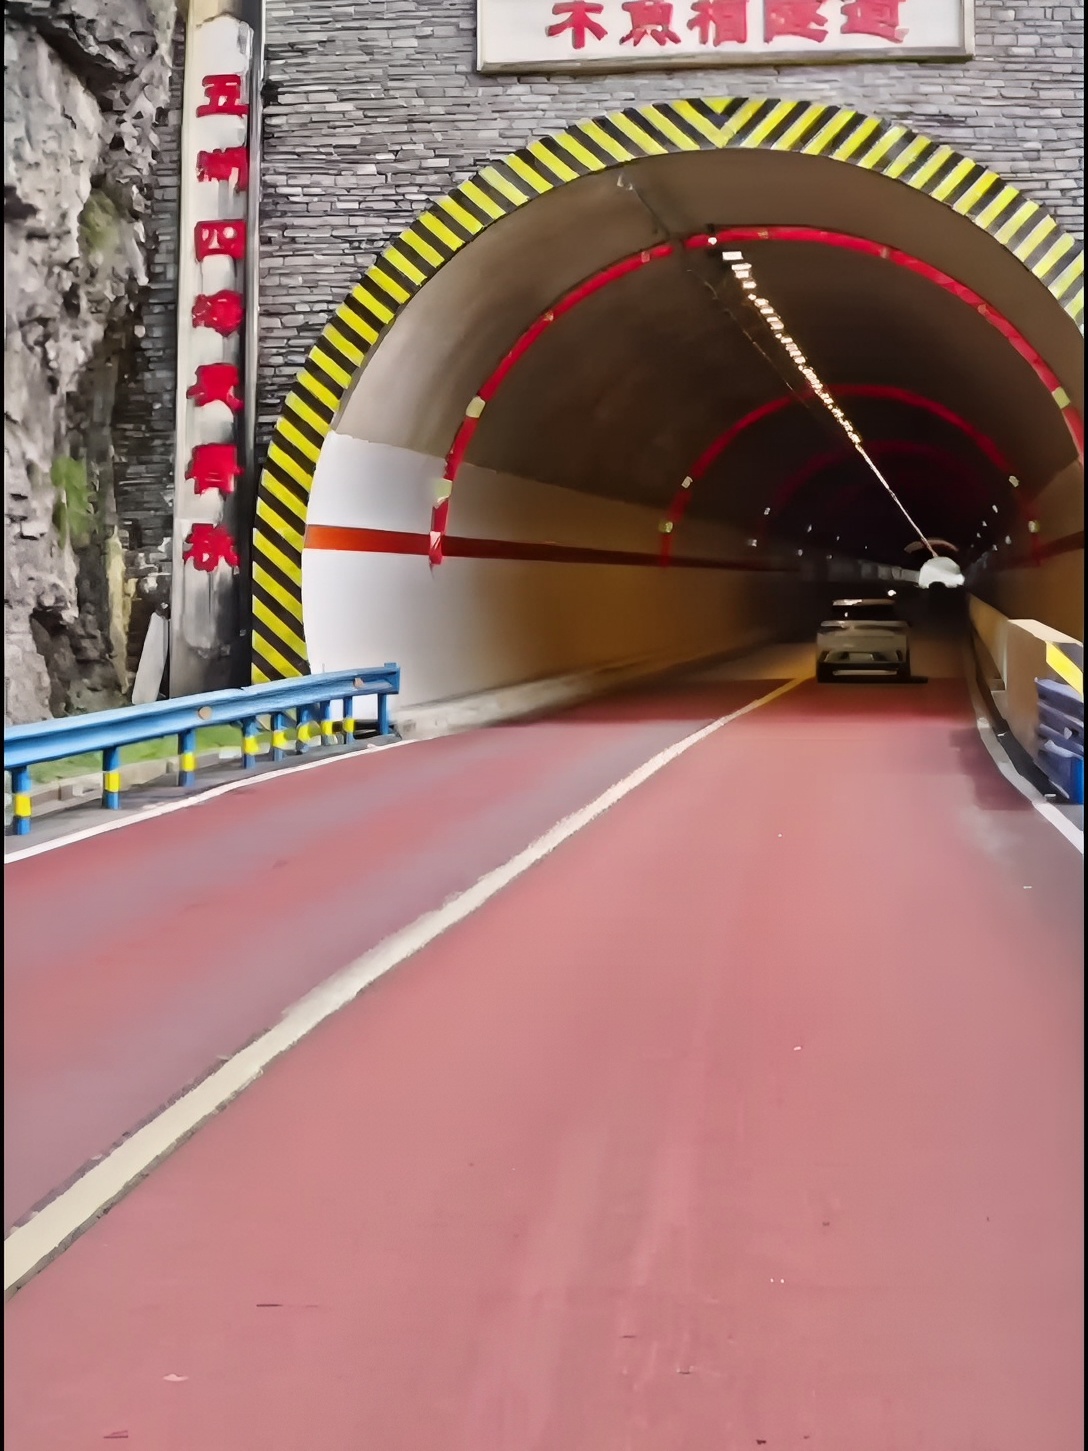 都说三峡风景美，三峡沿江公路也不一般呀。 # 沿江公路 # 公路隧道 # 宜昌